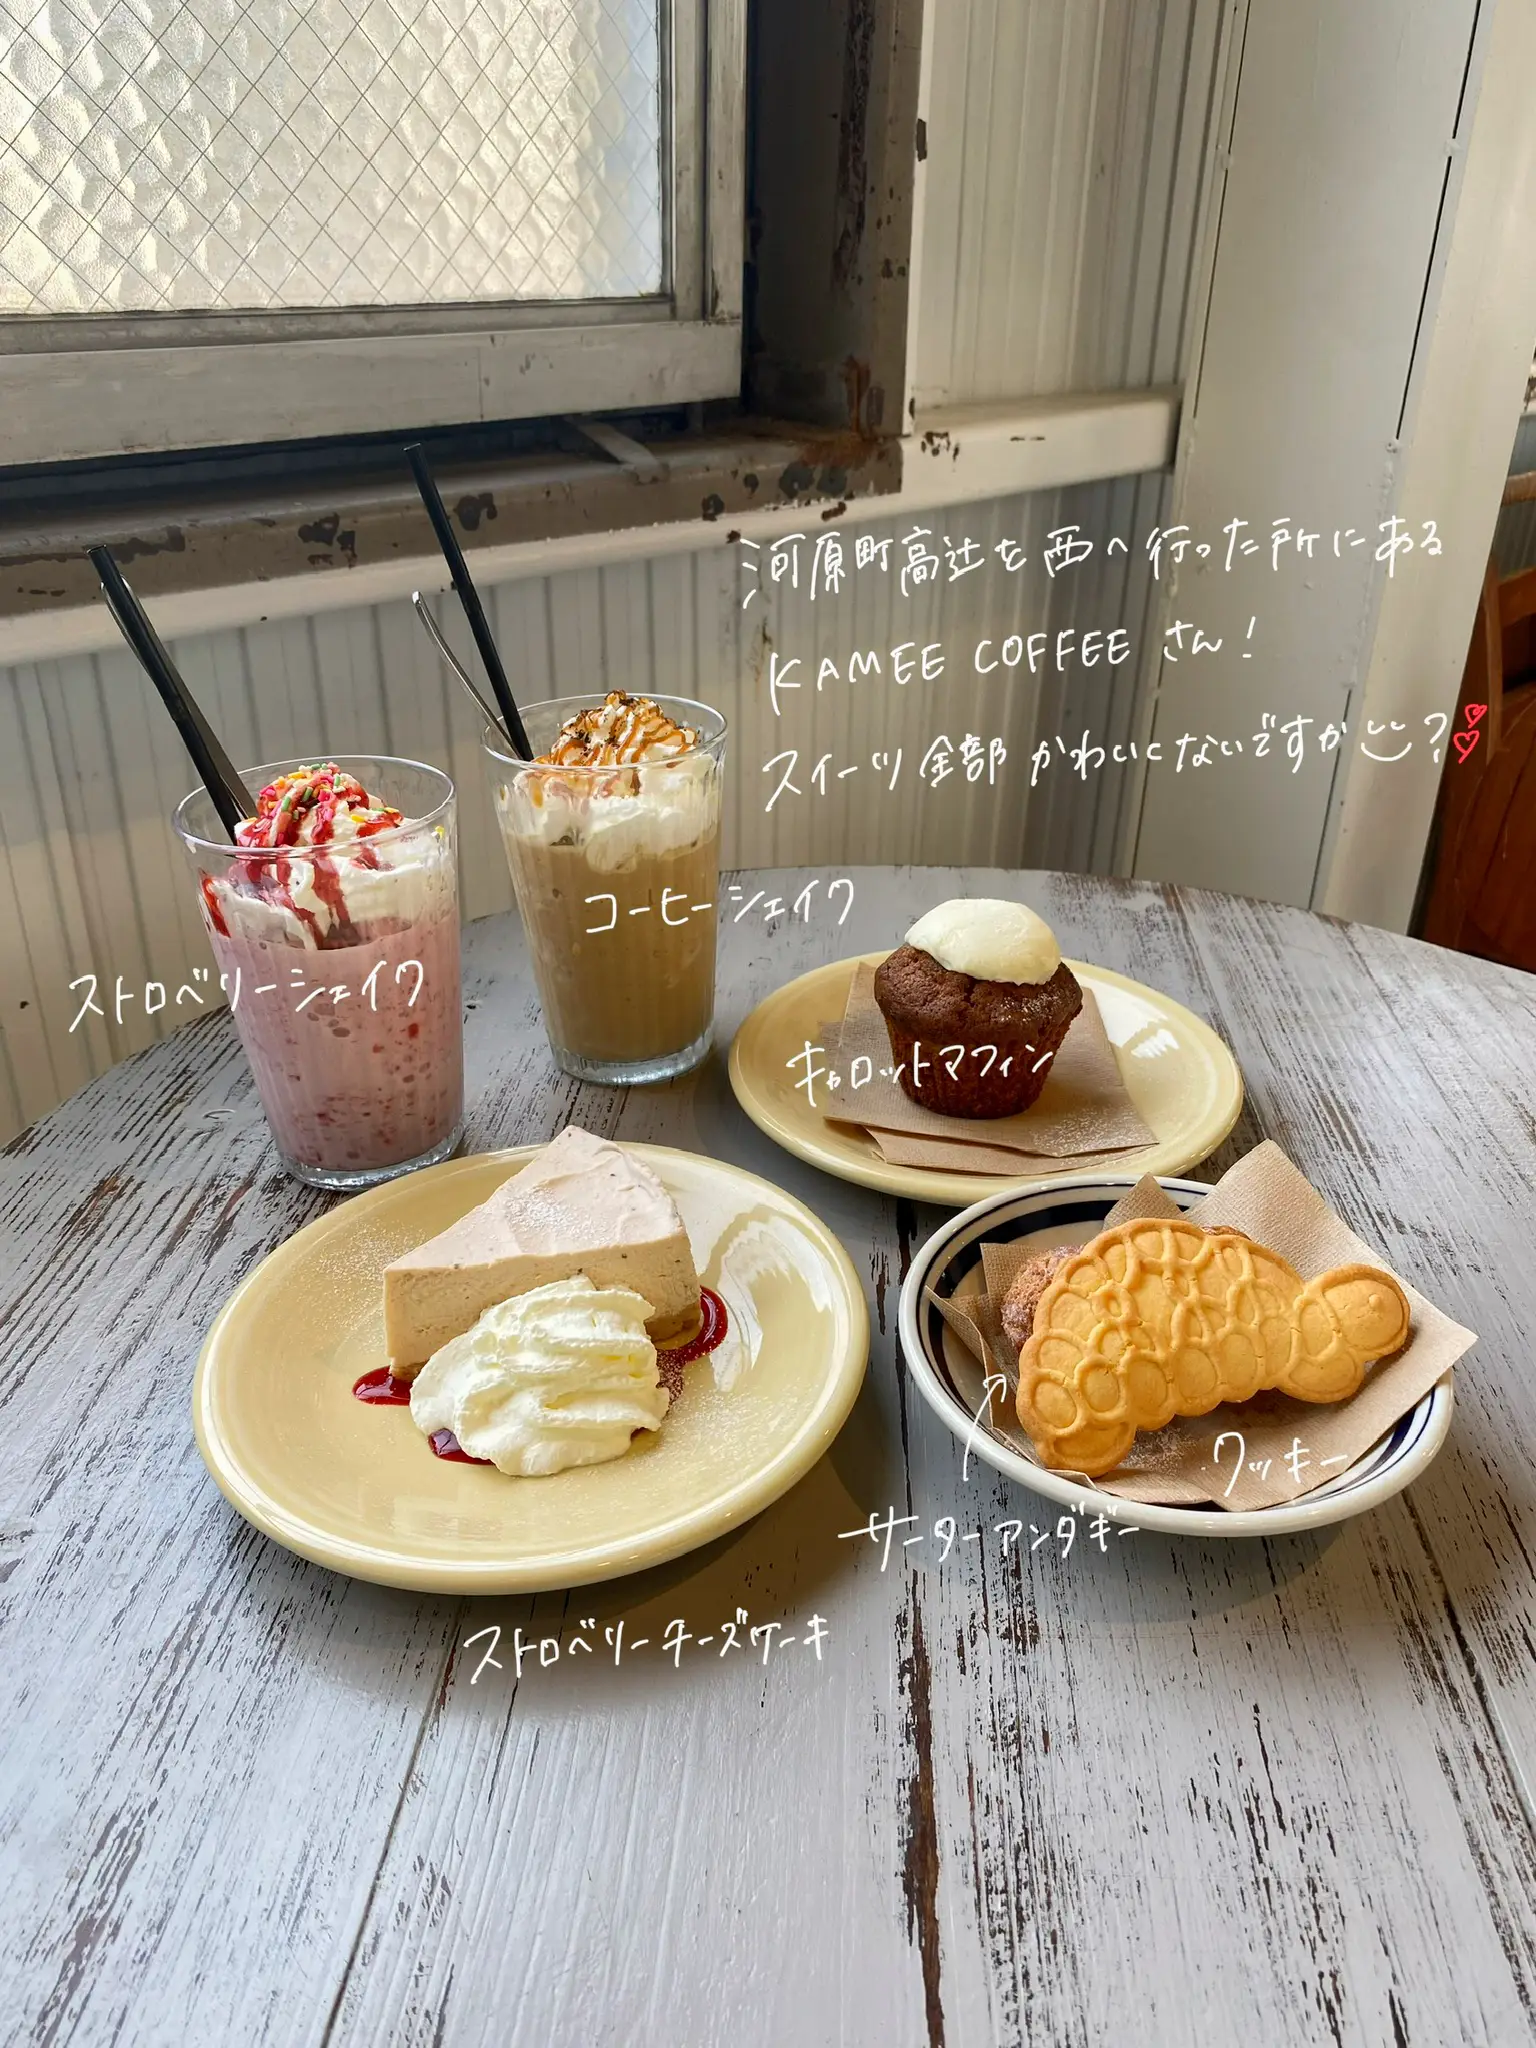 kamee coffee kyoto 高辻店 - Lemon8検索